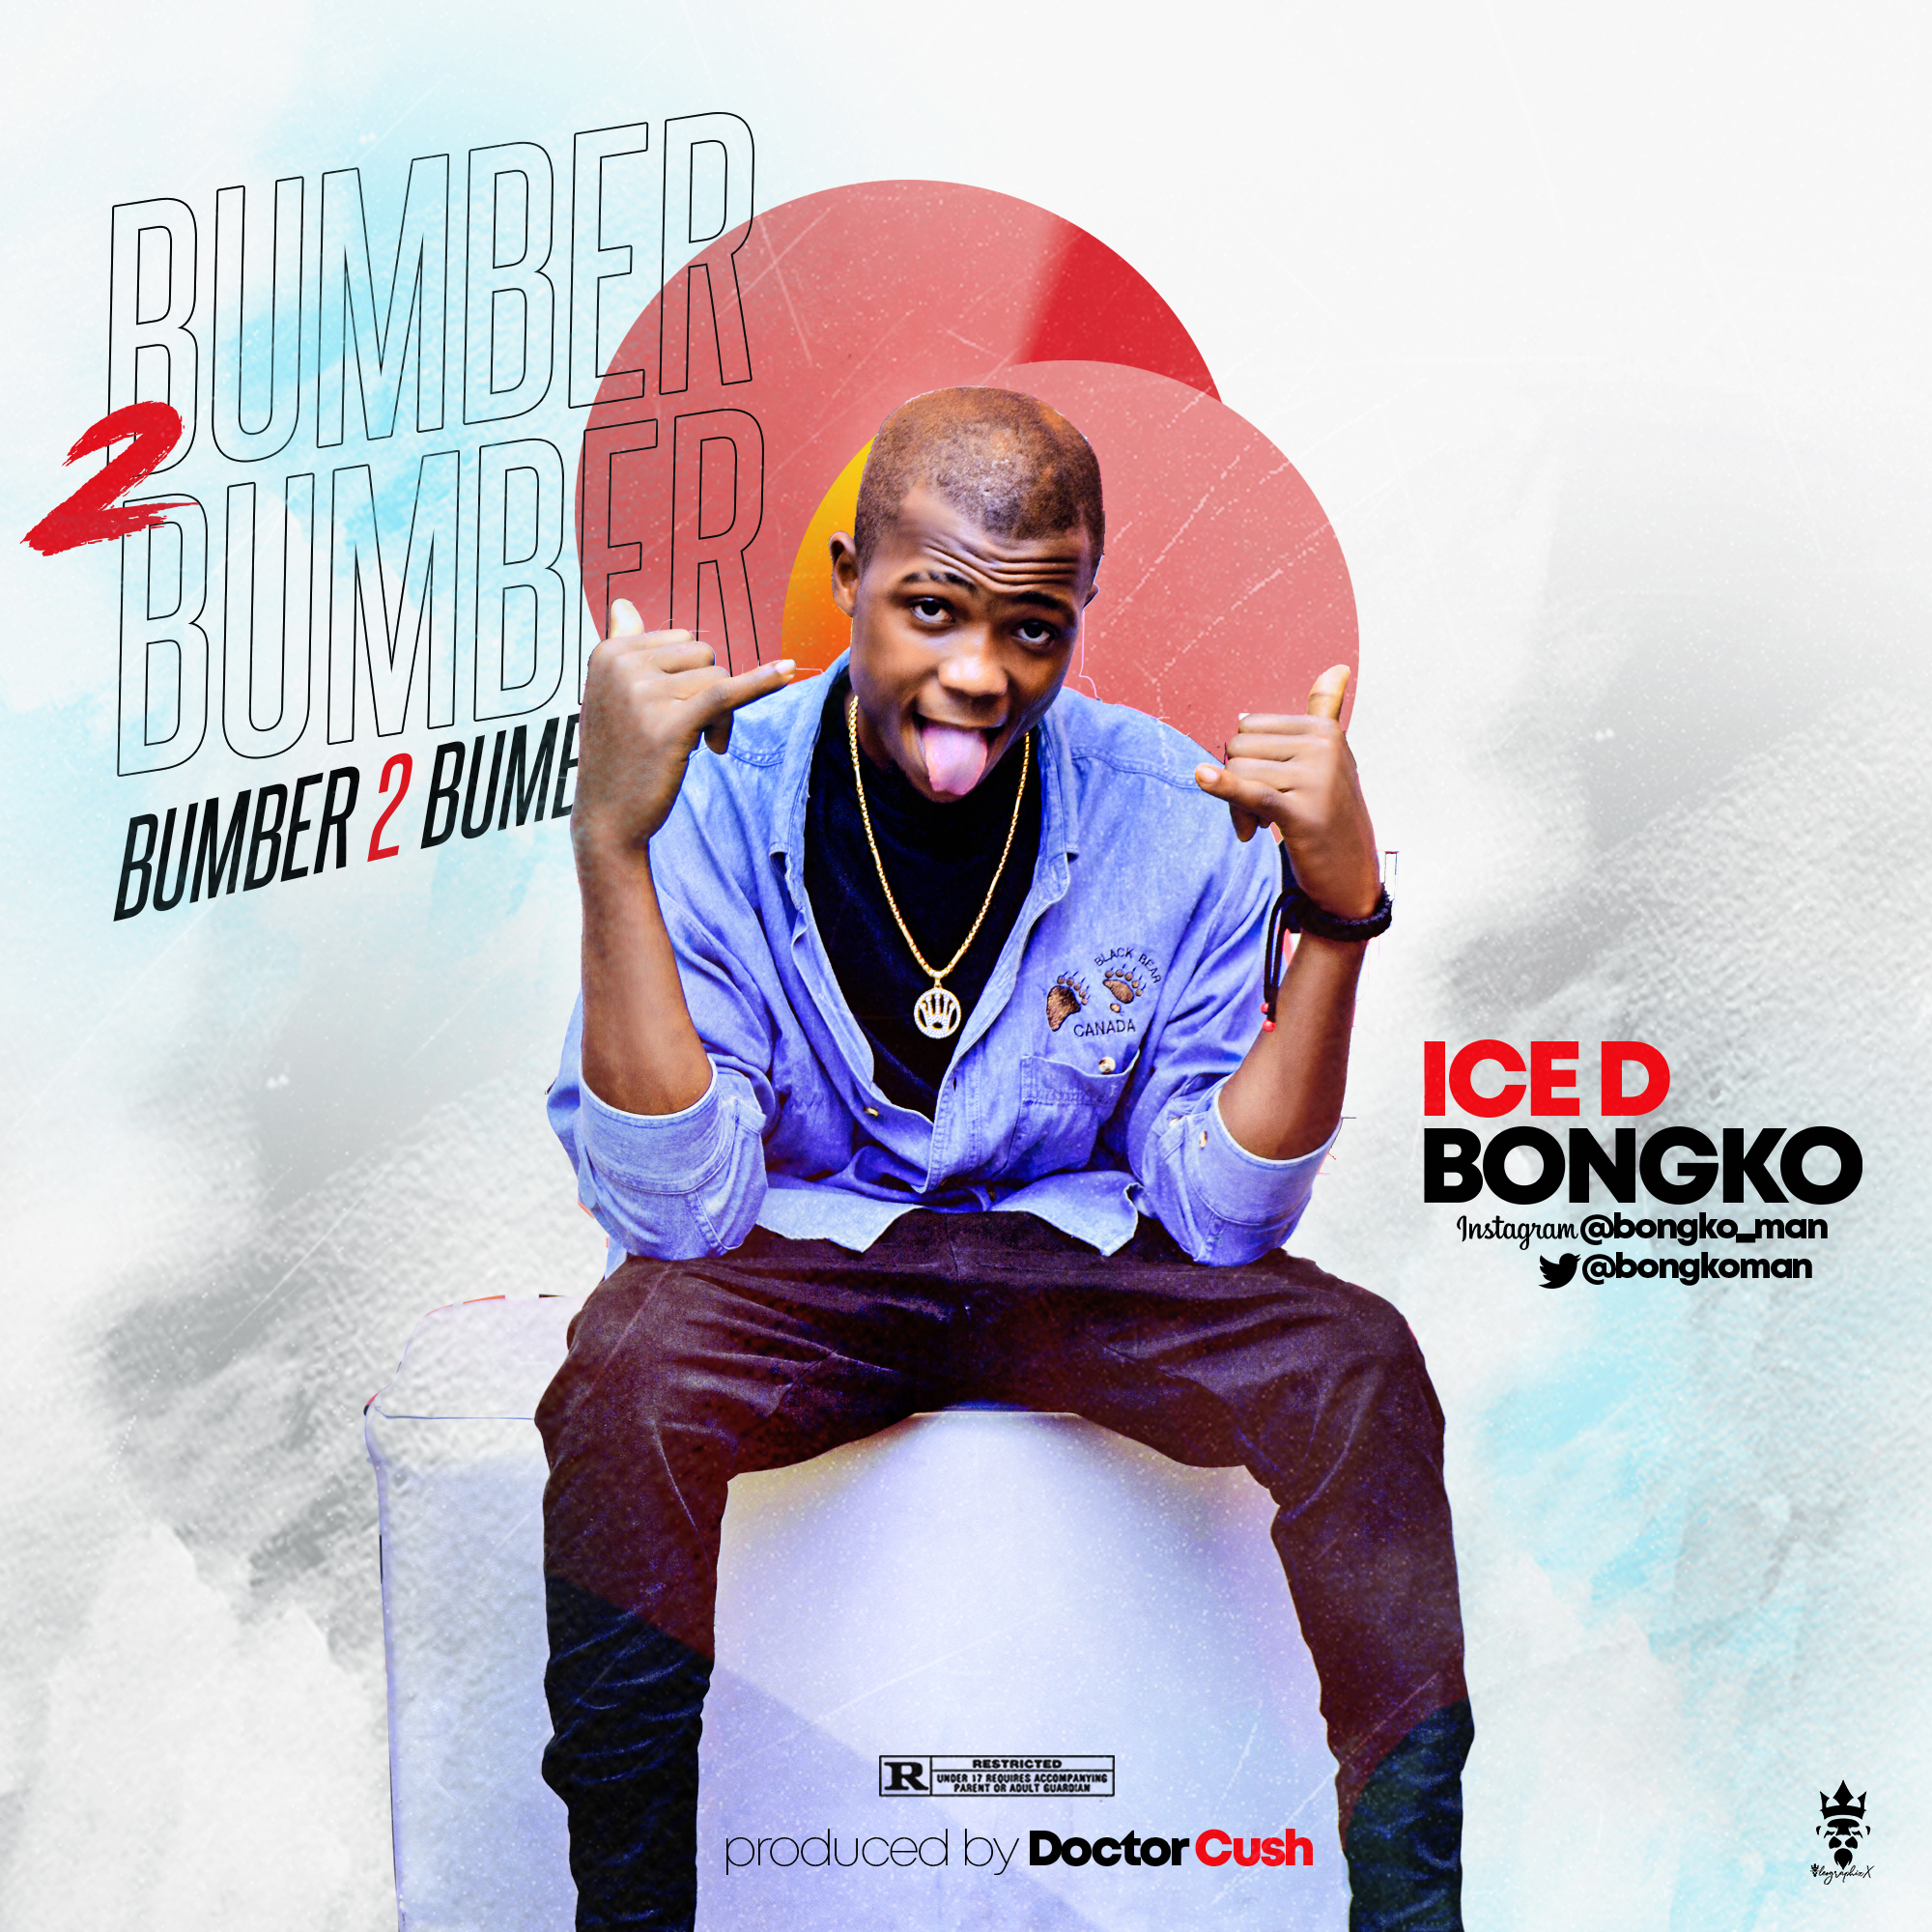 DOWNLOAD MUSIC: Ice D Bongko – Bumber 2 Bumber